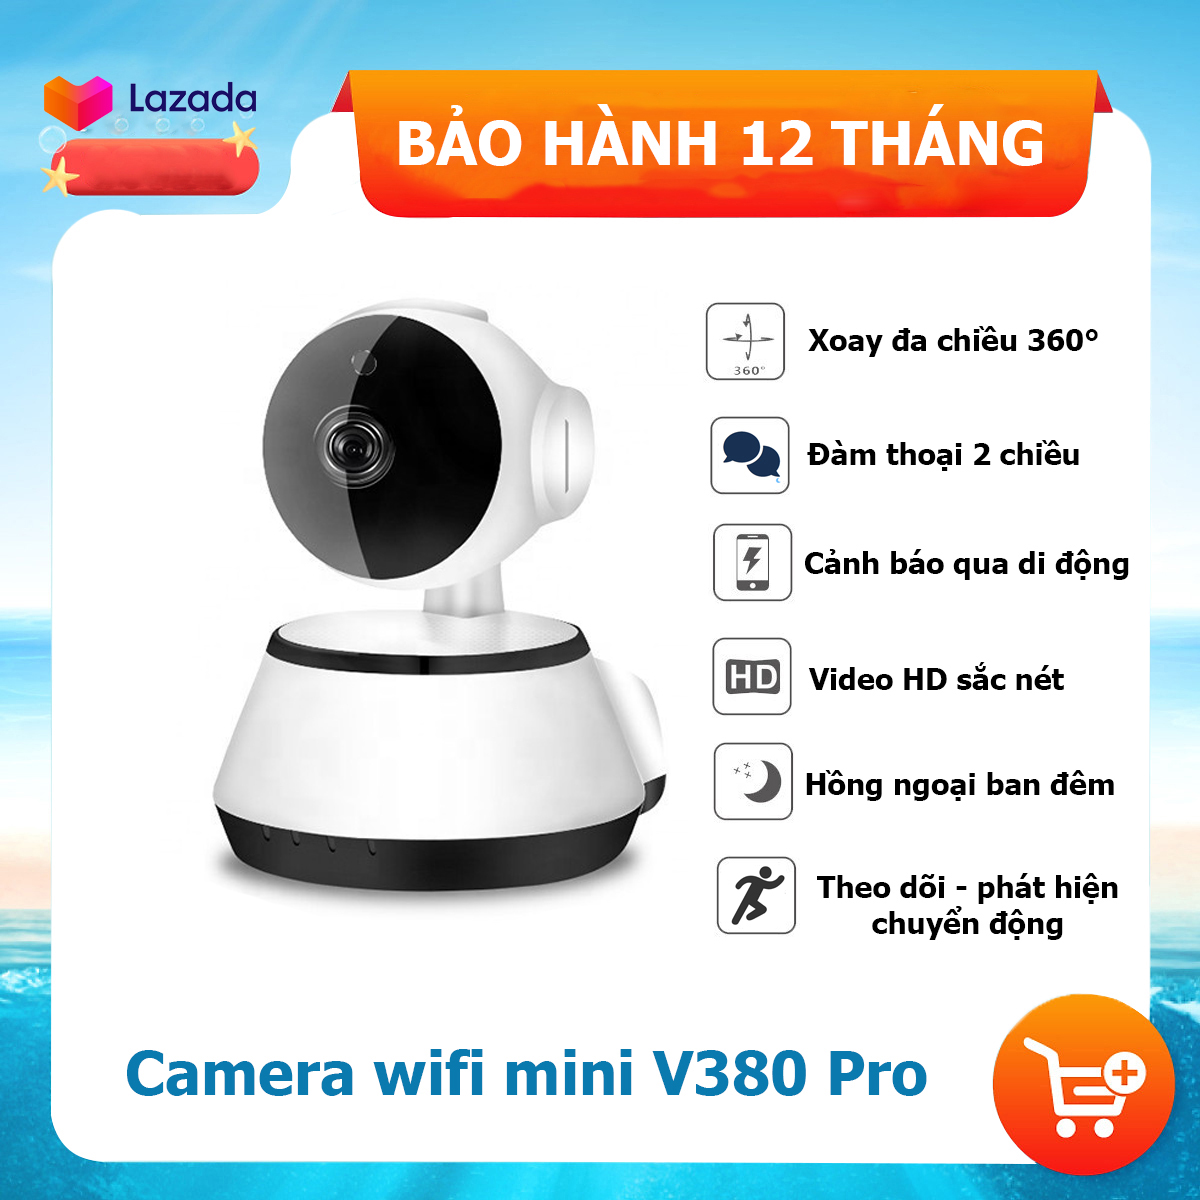 Camera wifi mini V380 pro – Camera IP siêu nhỏ an ninh gia đình – Camera trong nhà chống trộm Góc rộng xoay đa hướng, đàm thoại 2 chiều, cảnh báo chuyển động, hình ảnh Full HD, cảm biến hồng ngoại ban đêm.